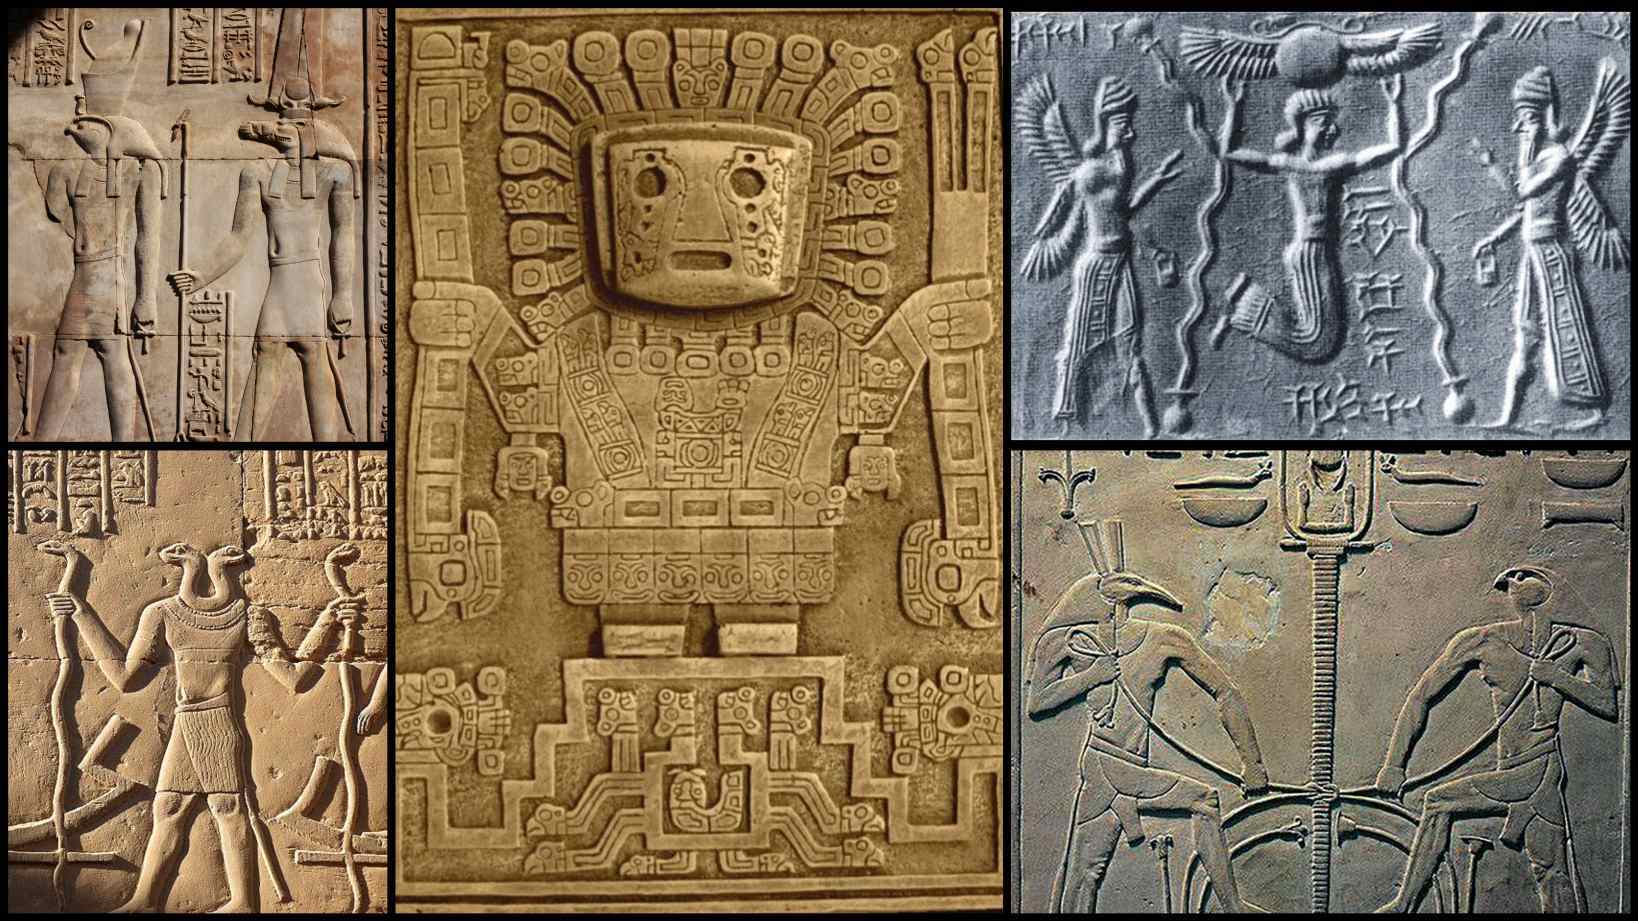 Des écrits datant de 947 après JC par Abu al-Hasan Ali al-Mas'udi décrivent des légendes arabes selon lesquelles les Egyptiens utilisaient la lévitation pour construire les pyramides. Un «papyrus magique» a été placé sous les lourdes pierres, puis les stanes ont été frappées avec un métal rad. Puis des pierres ont commencé à flotter le long d'un sentier bordé des mêmes mystérieuses tiges métalliques.